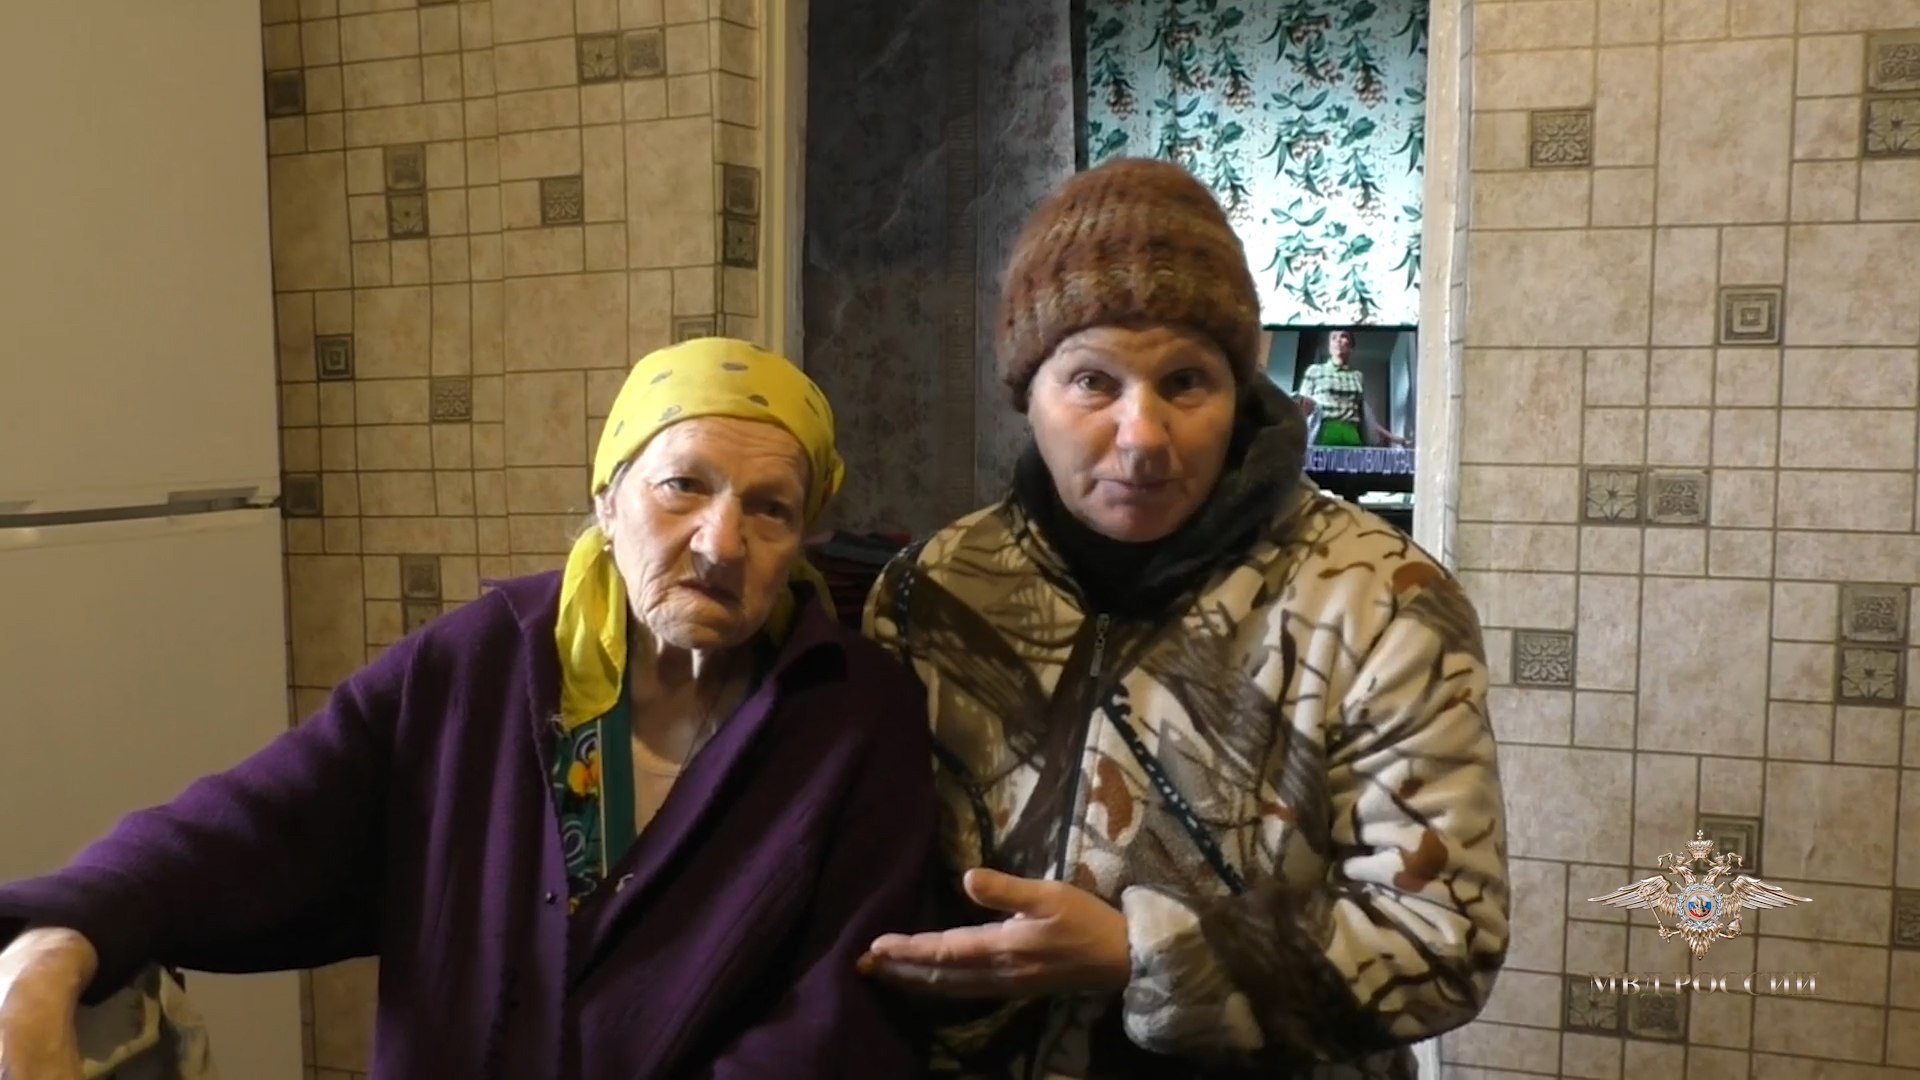 Полицейские помогли пожилой женщине оформить документы для получения российского гражданства